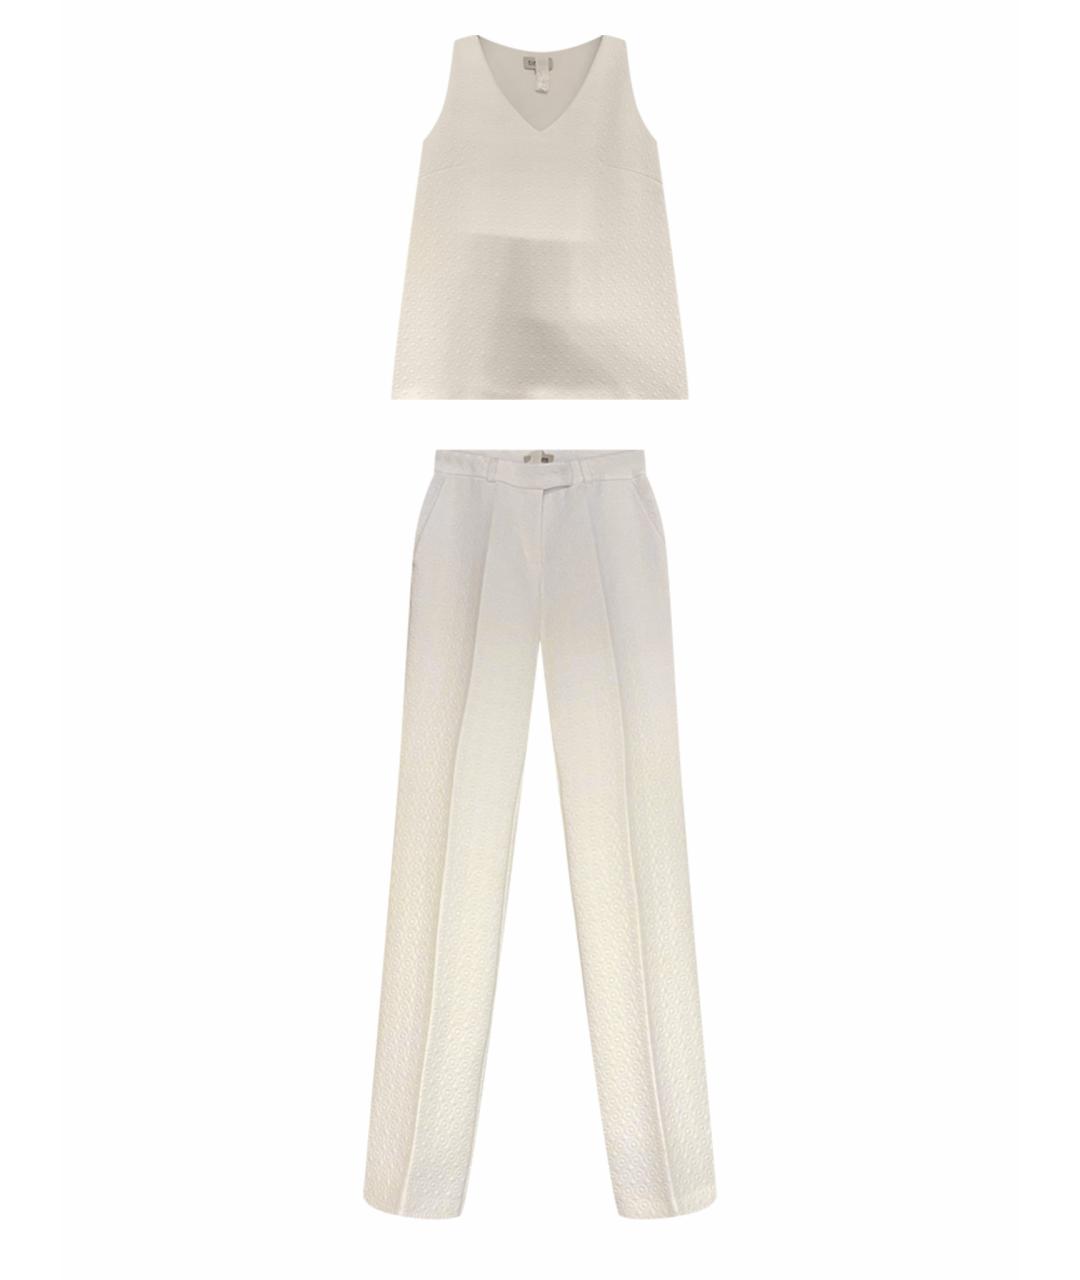 A LA RUSSE Белый костюм с брюками, фото 1